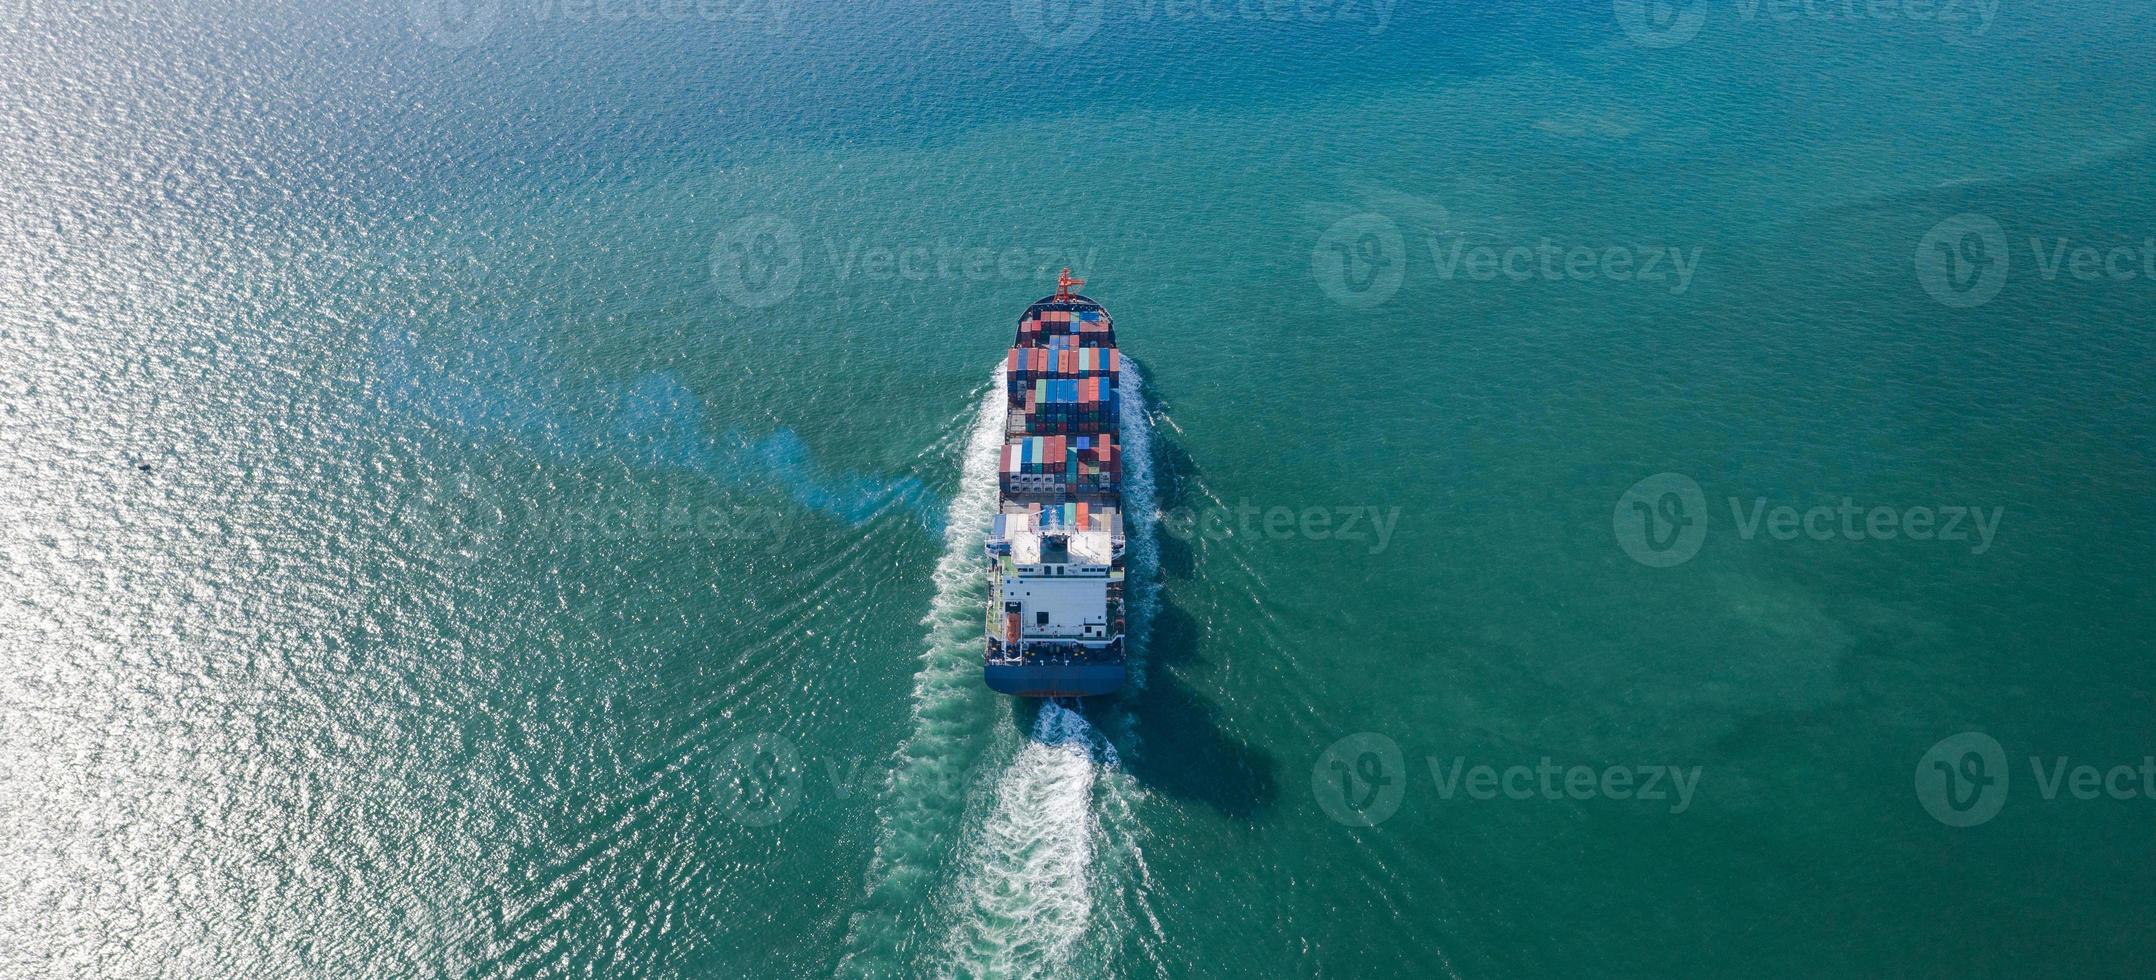 Vue aérienne de dessus du grand cargo porte-conteneurs photo